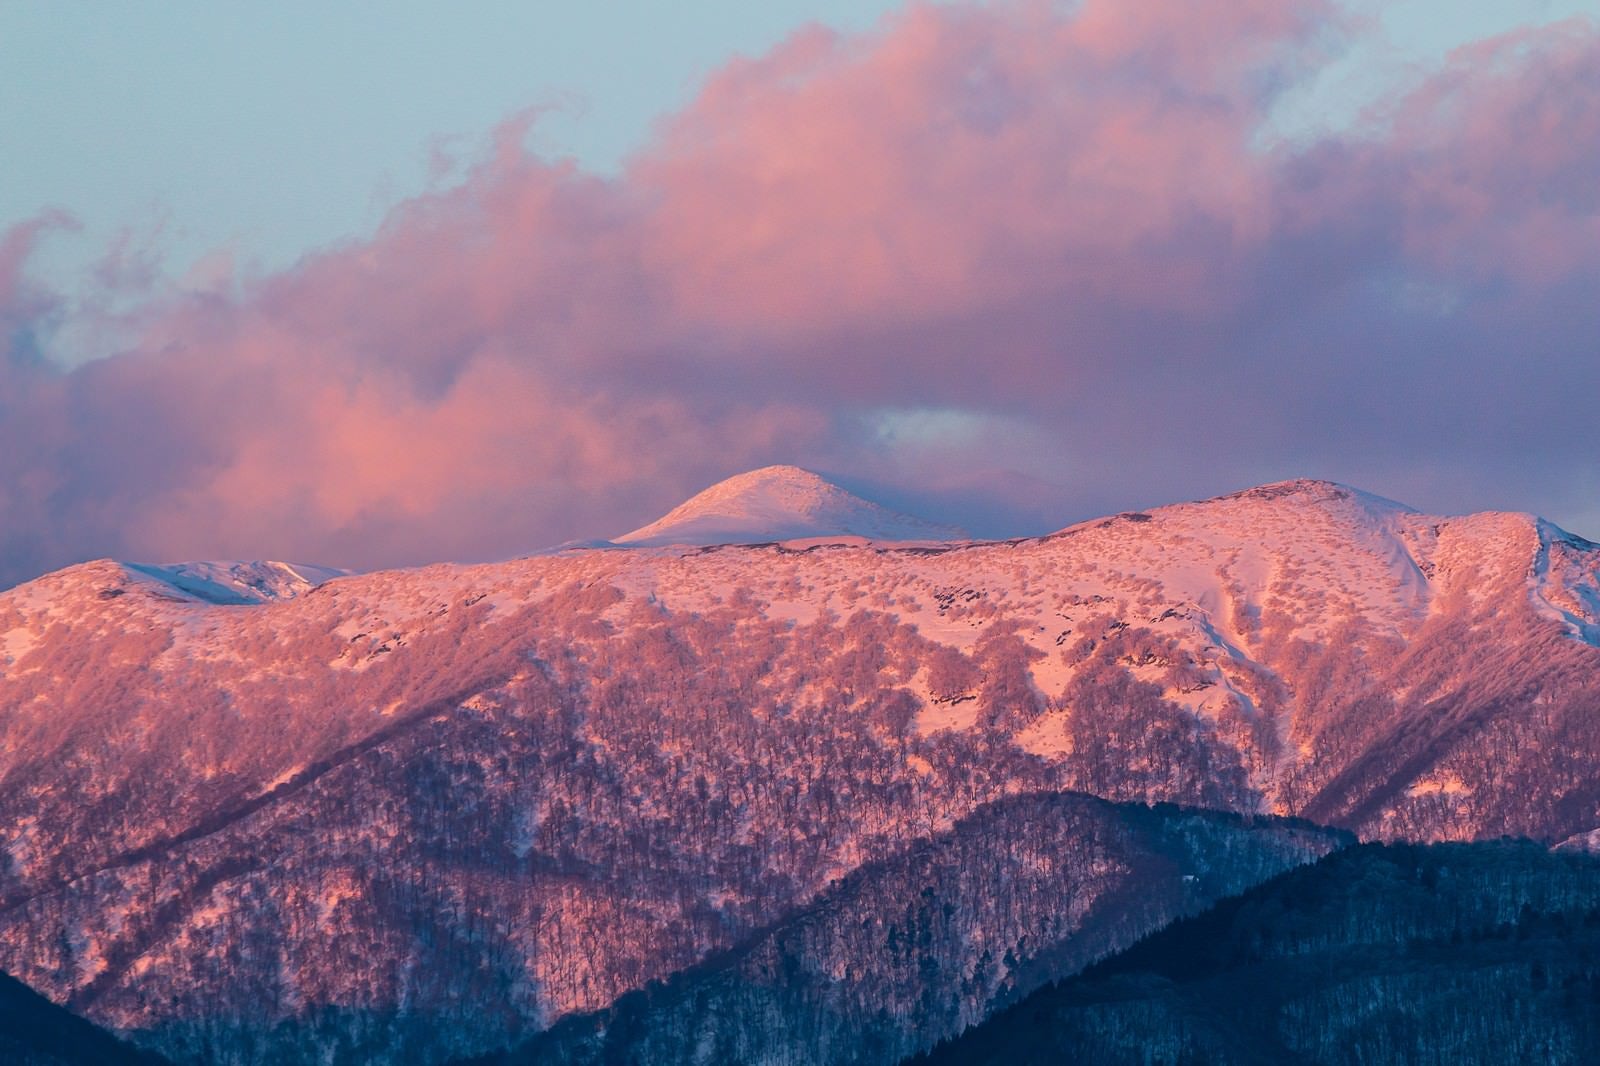 「雪残る秋田駒ヶ岳」の写真